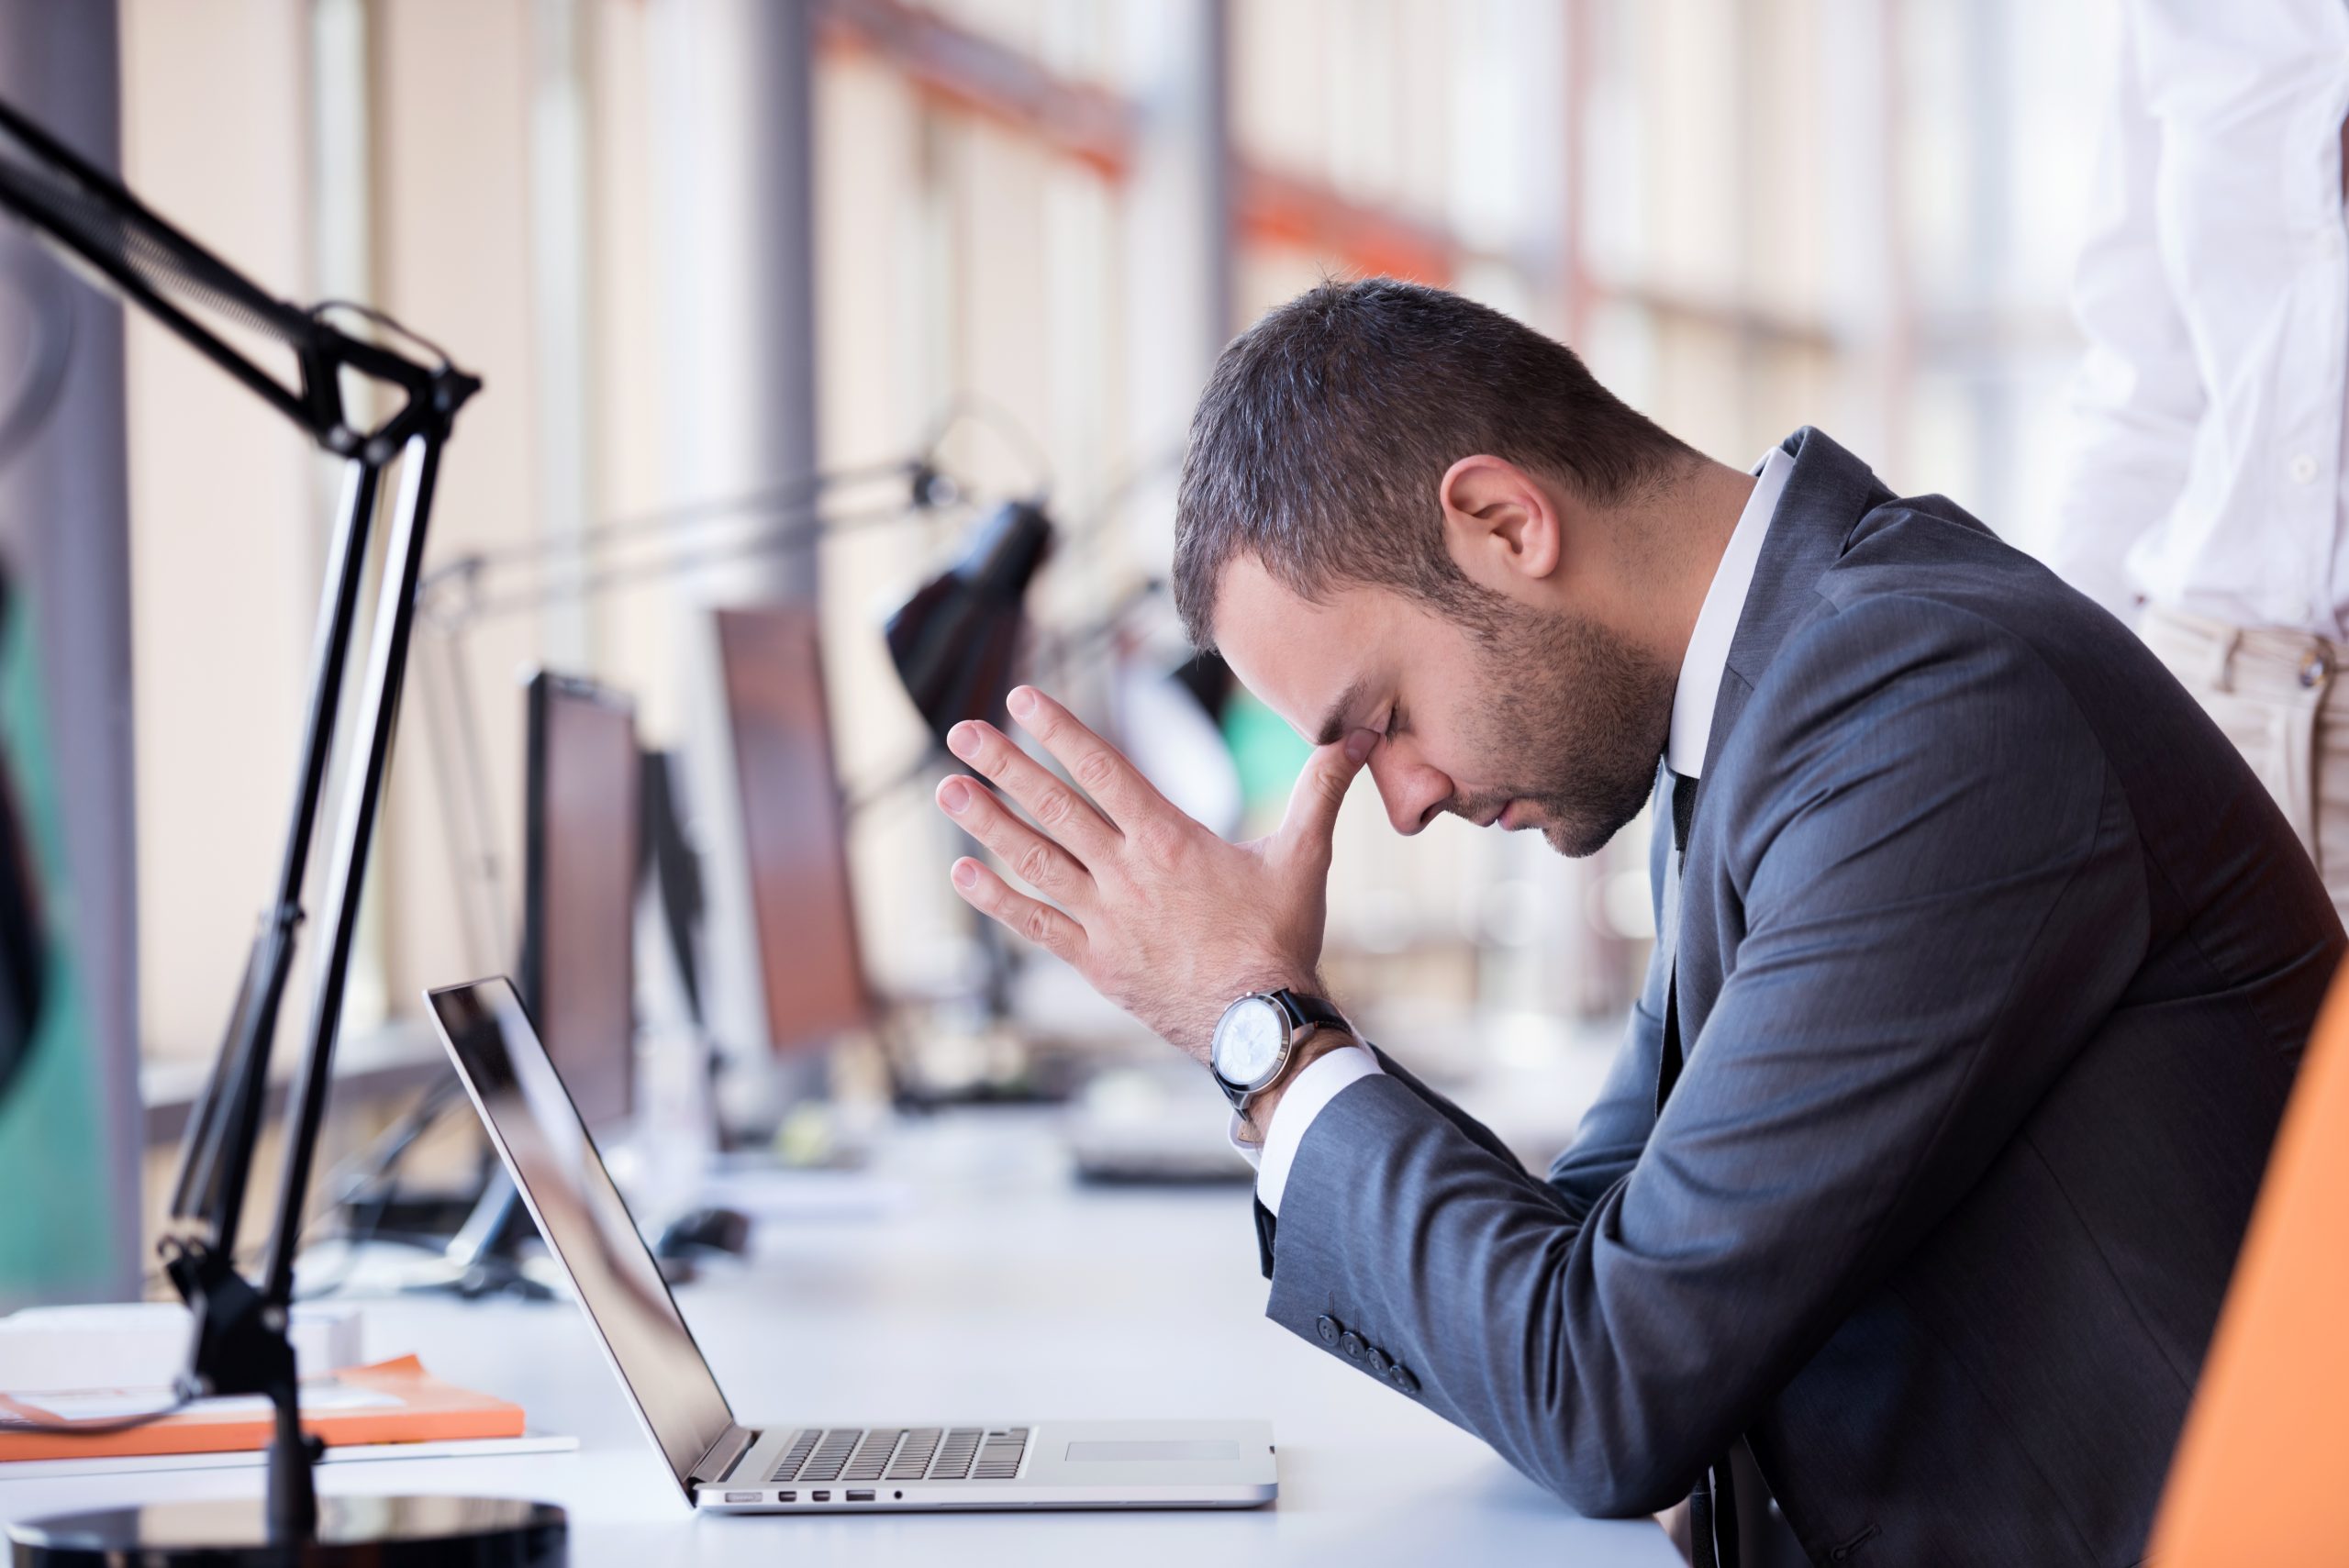 Imagem mostra homem de paletó e relógio com as mãos sobre o rosto, simbolizando stress no ambiente de trabalho